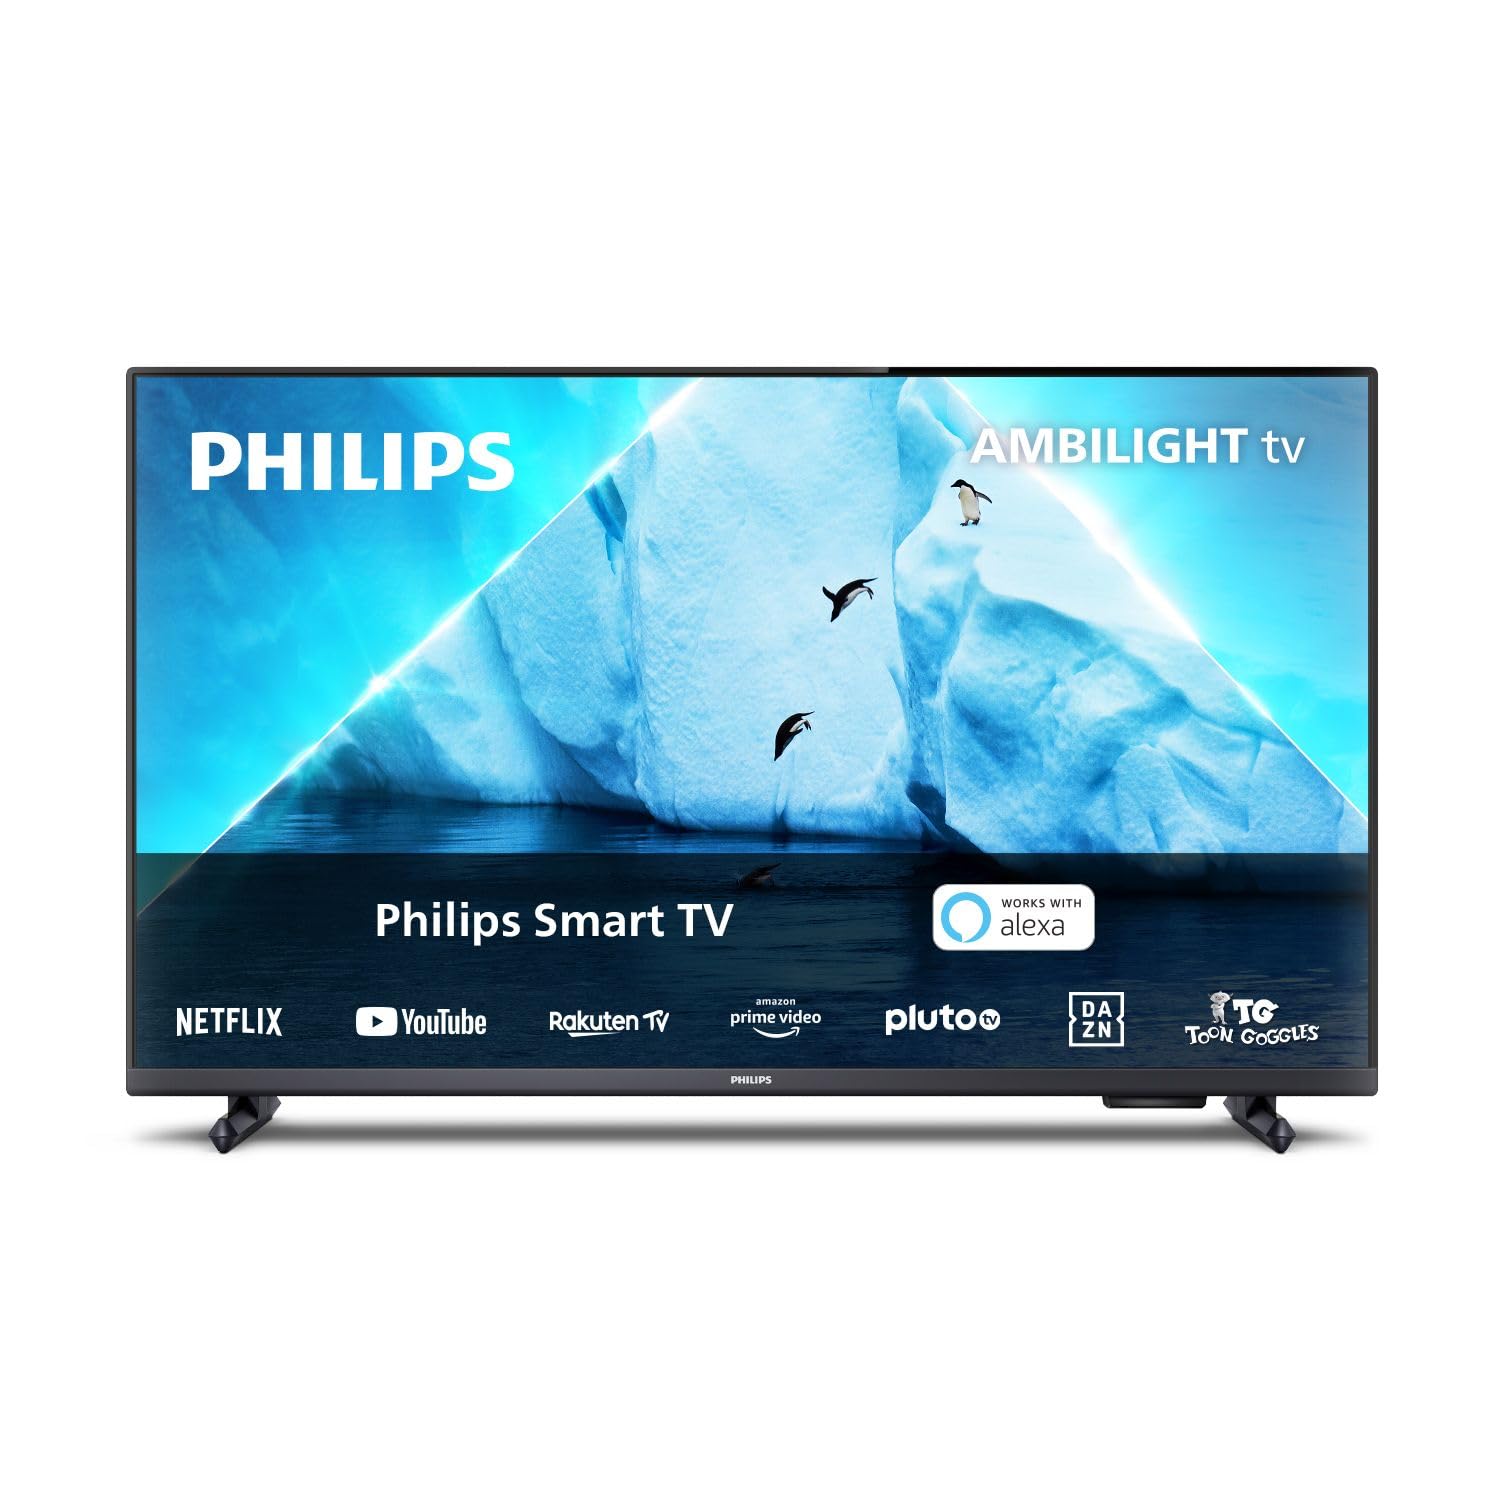 Philips Ambilight TV | 32PFS6908/12 | 80 cm (32 Zoll) LED Full HD Fernseher | 60 Hz | HDR | Smart TV